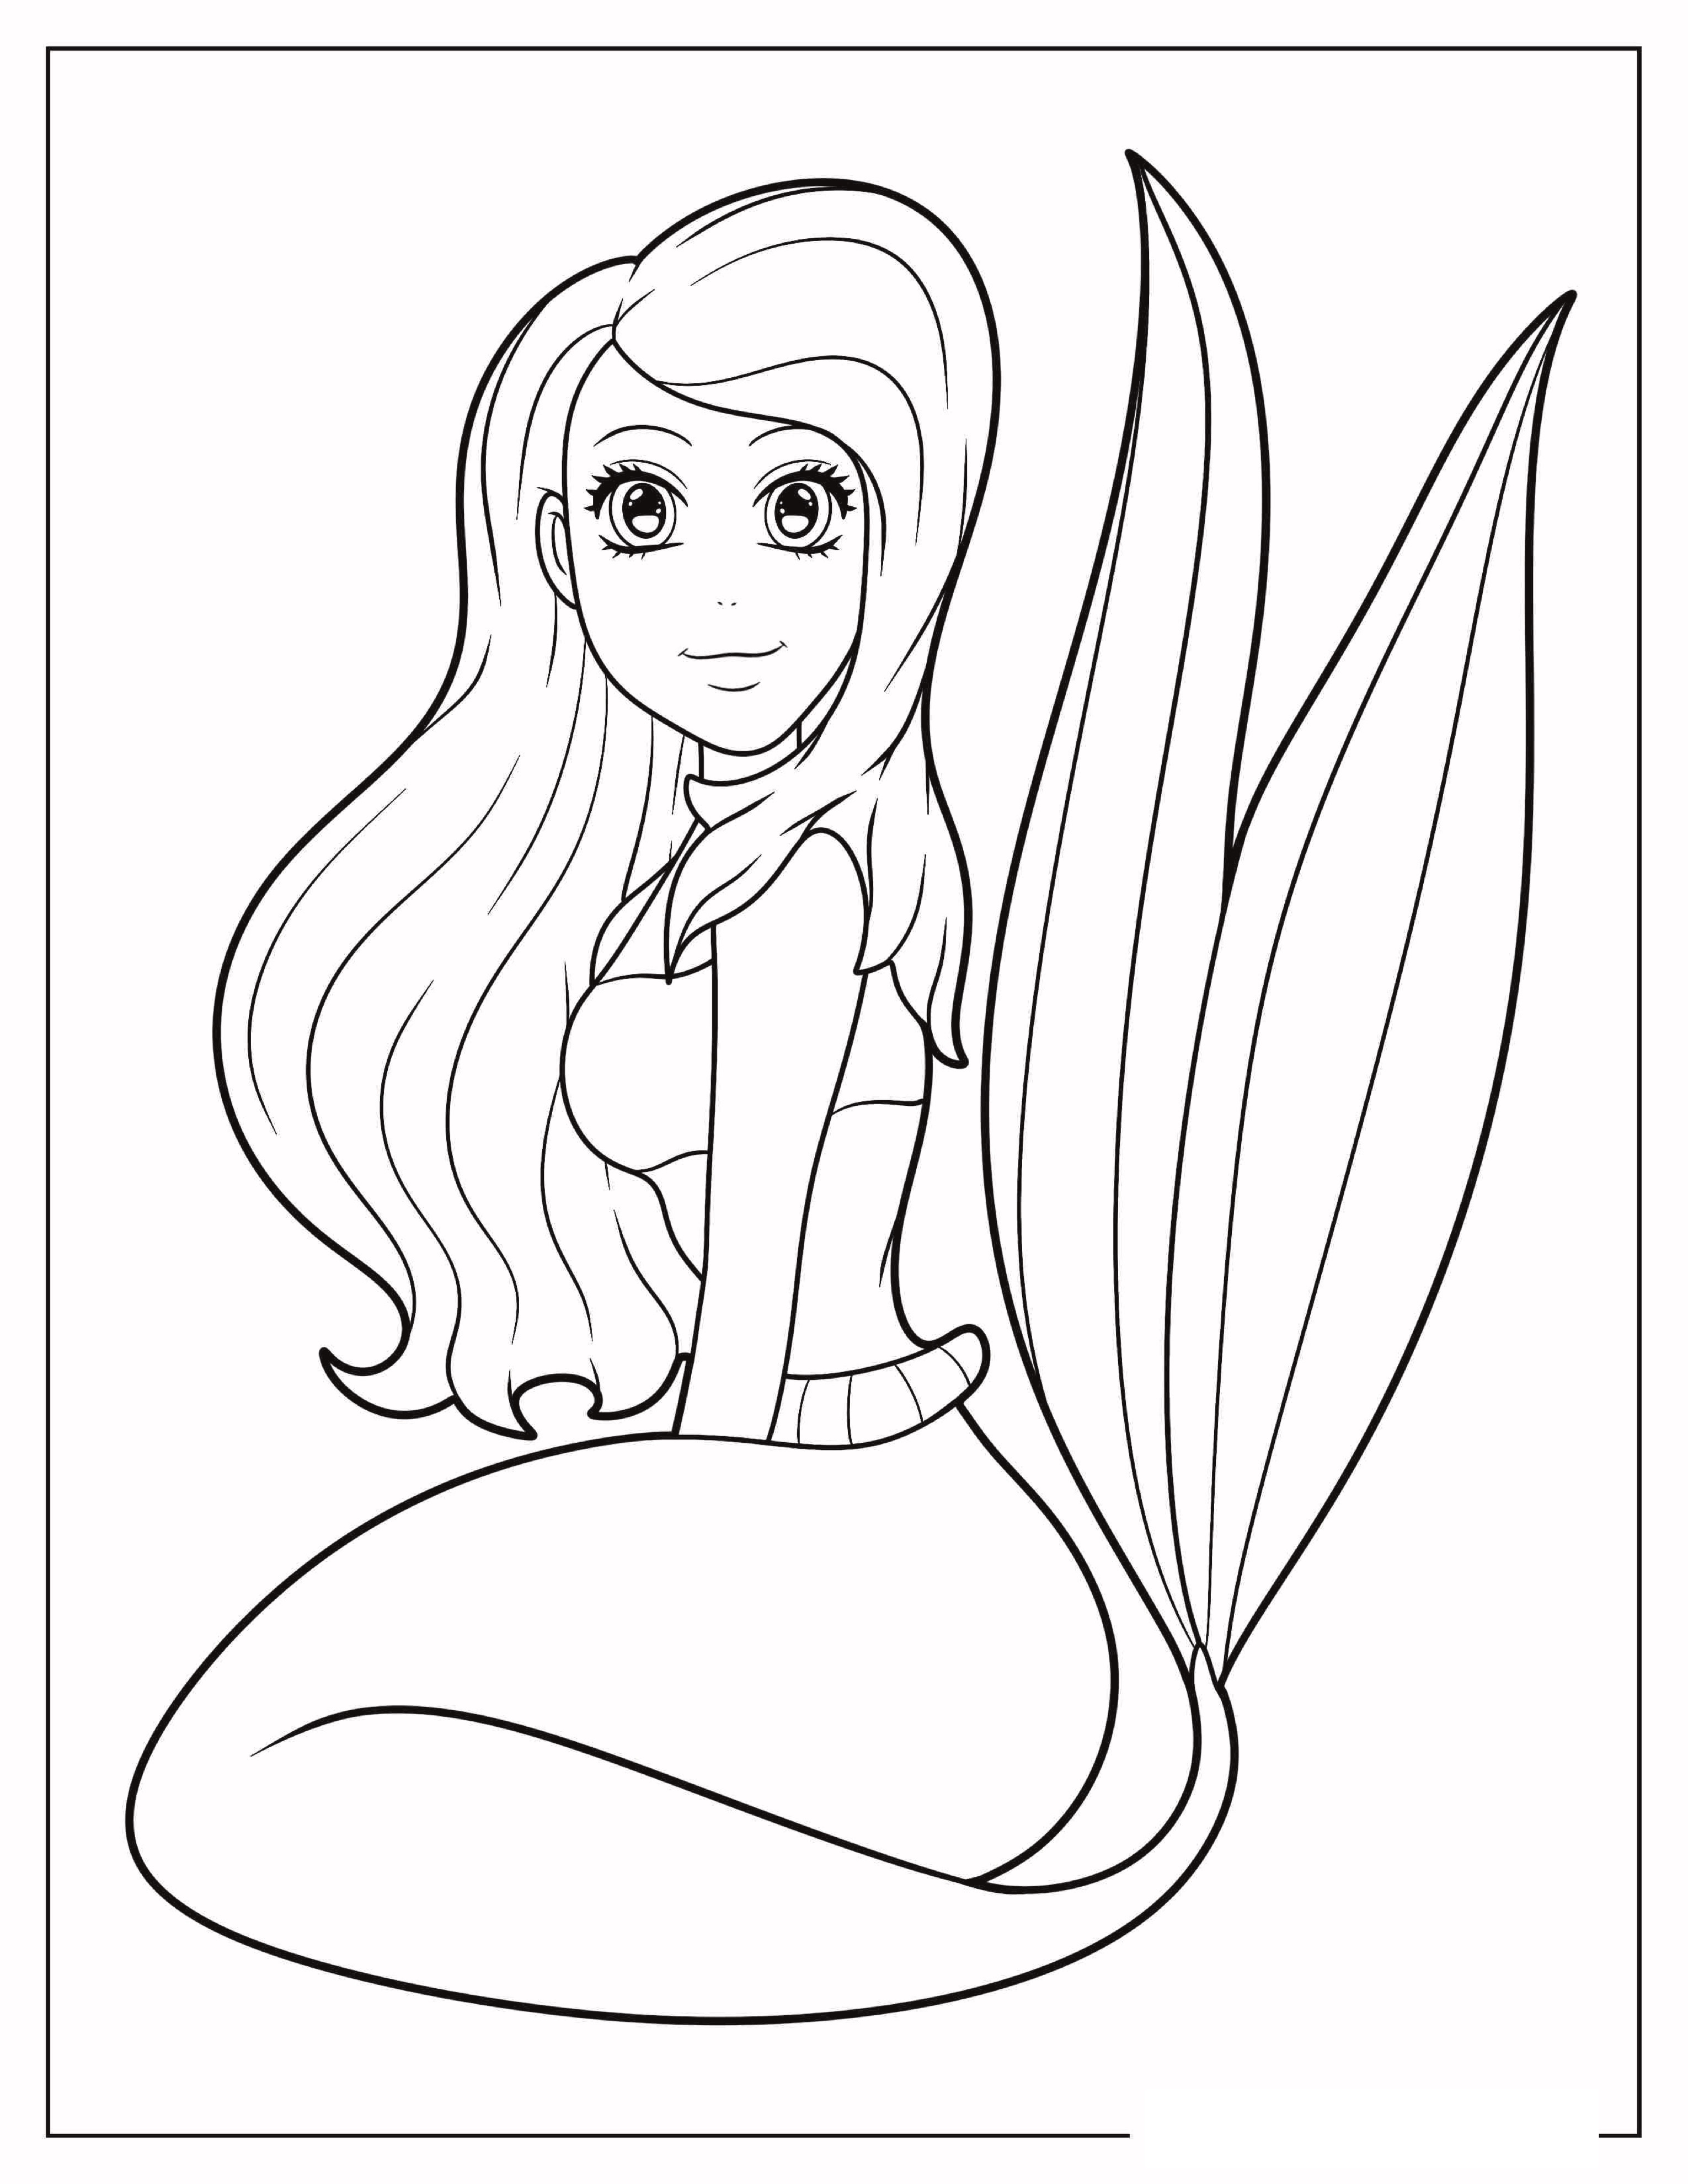 Easy-Mermaid-Coloring-Page.jpg